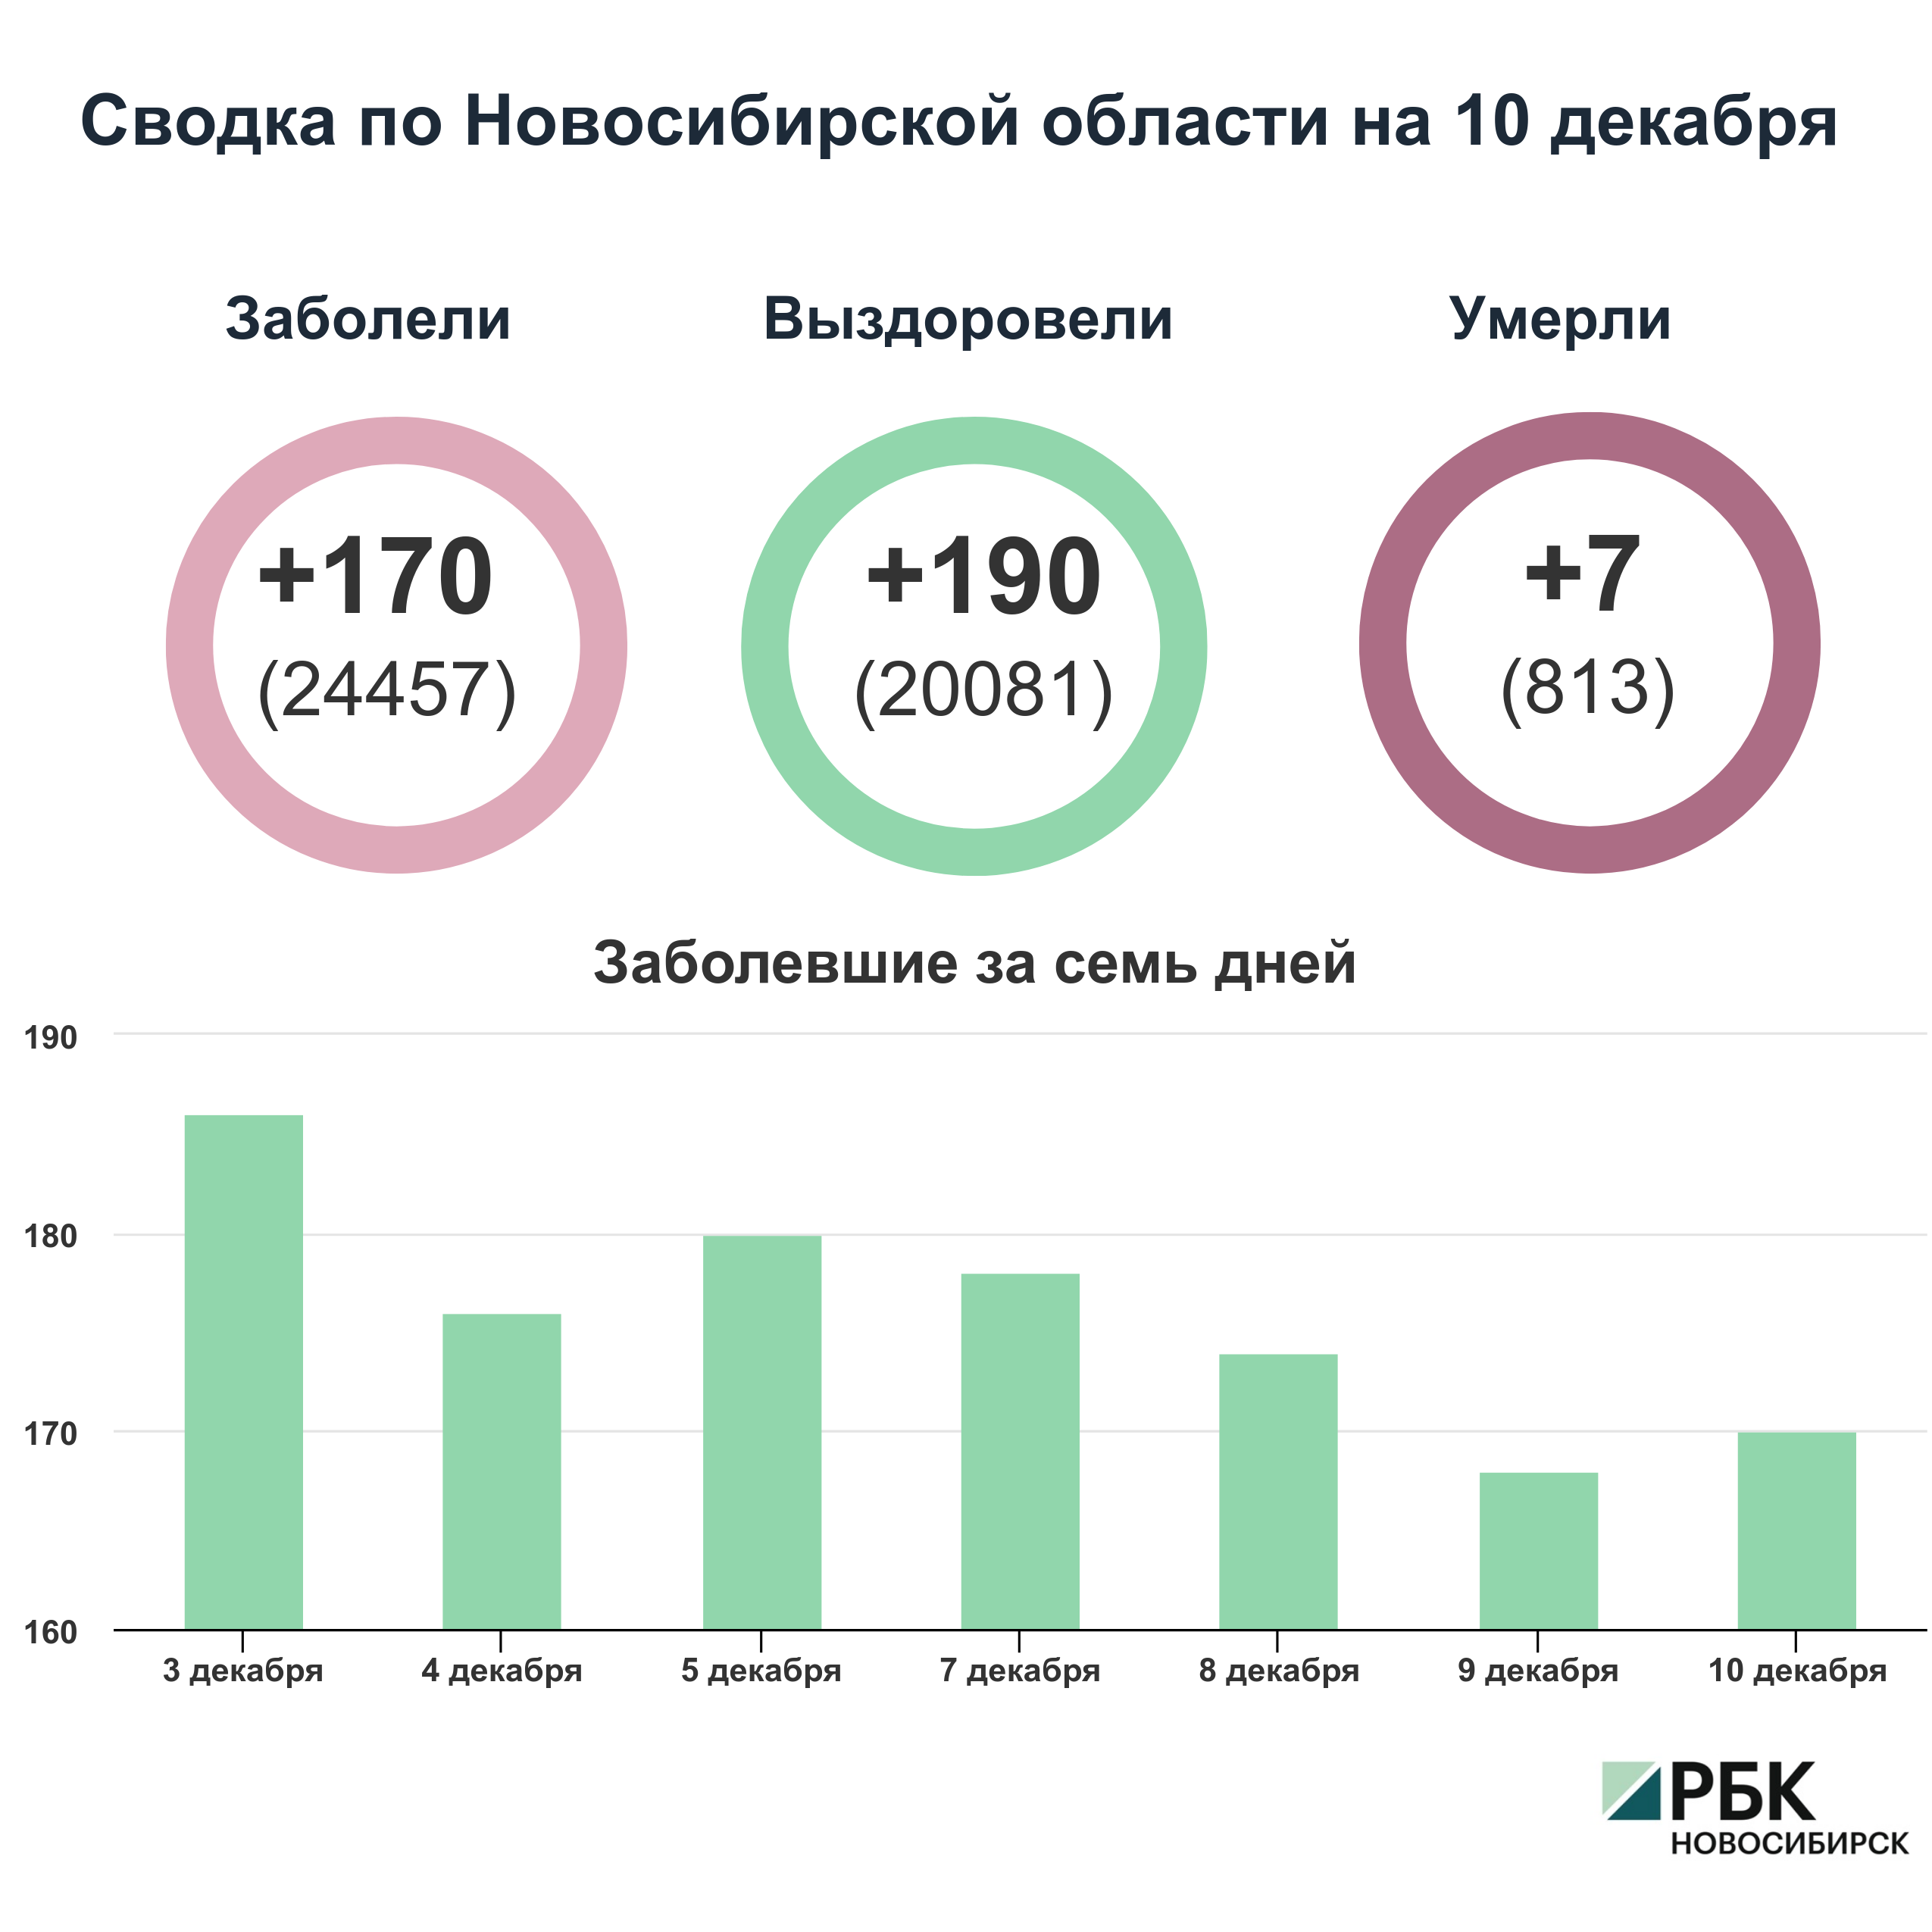 Коронавирус в Новосибирске: сводка на 10 декабря